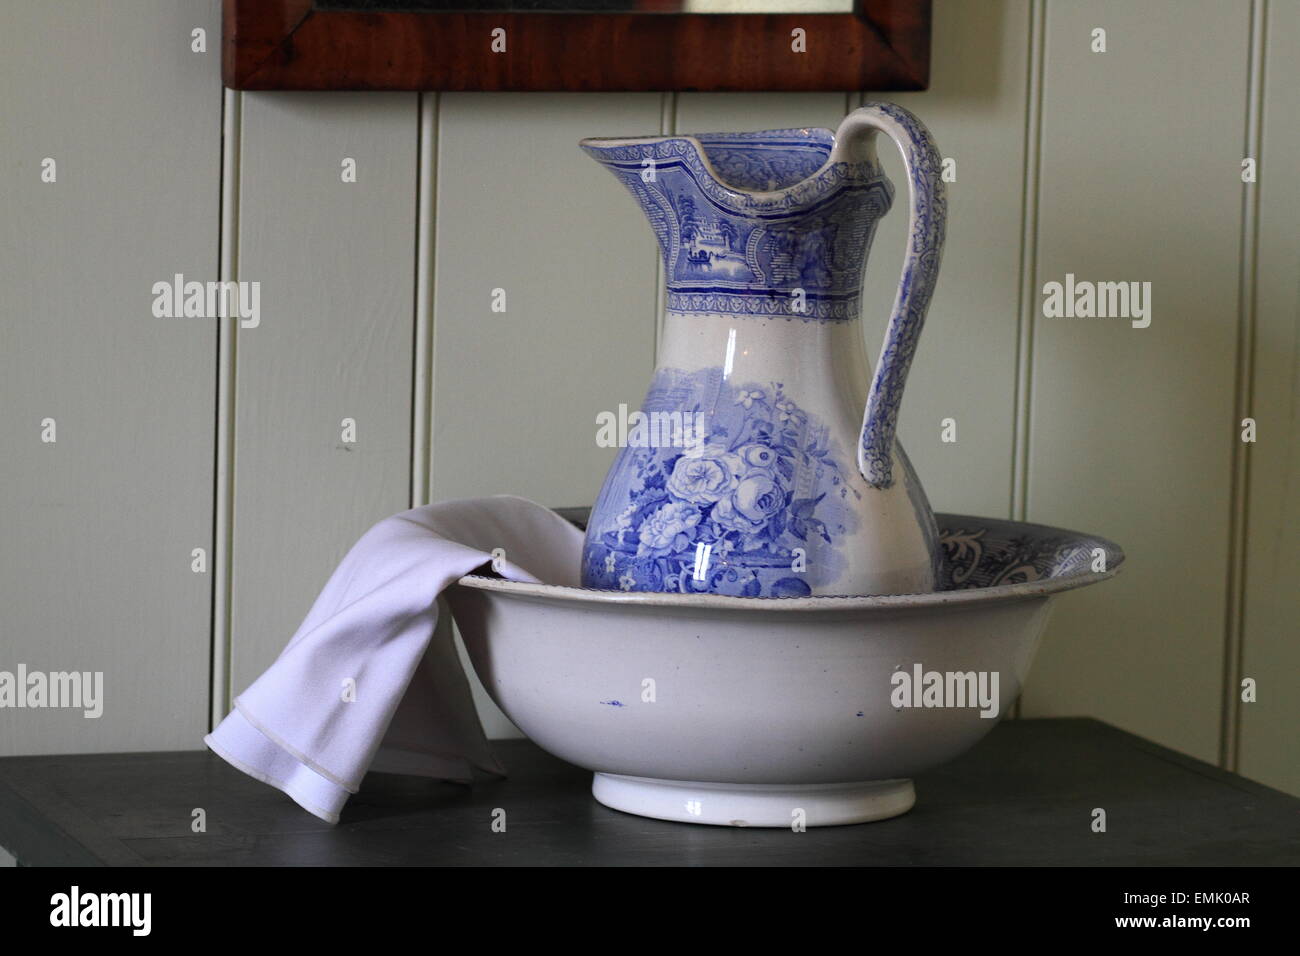 Porcelain wash Basin Stock Photo